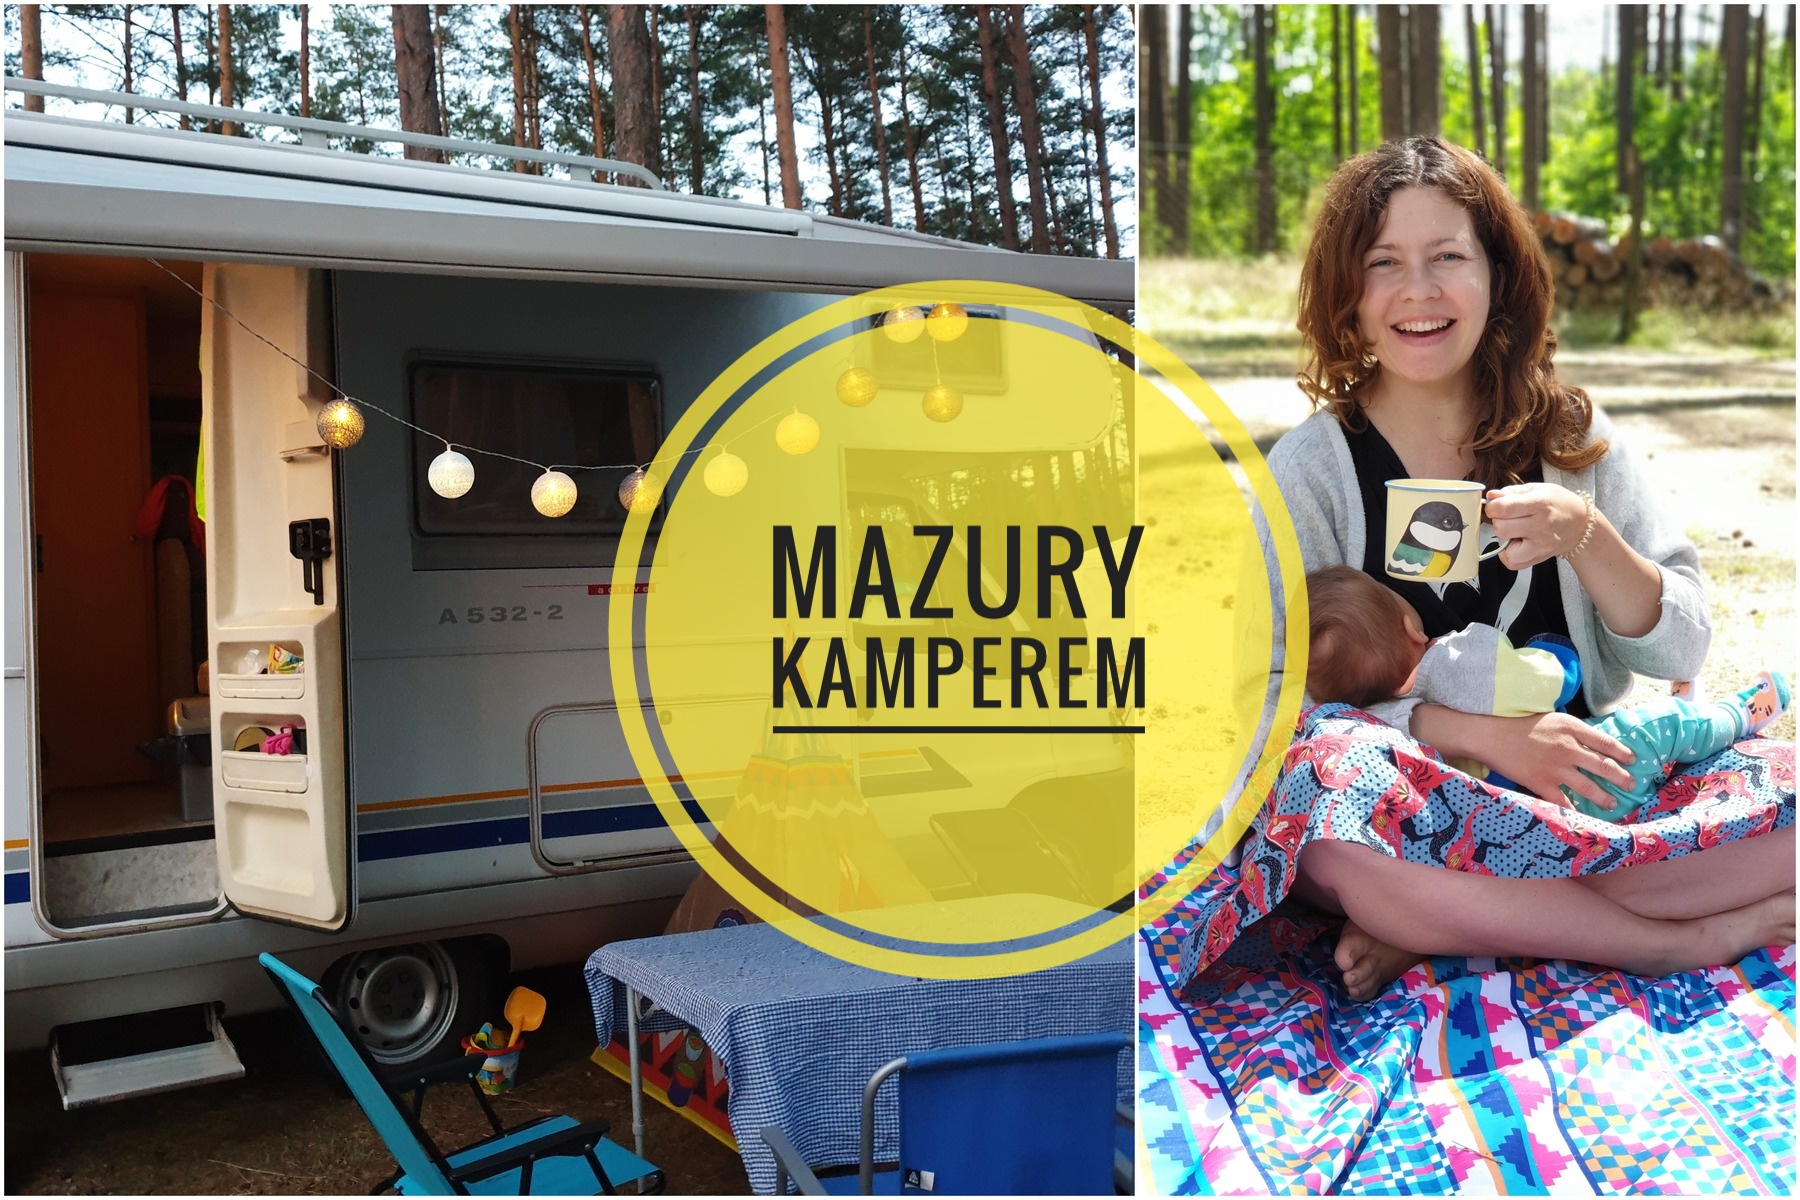 Mazury kamperem